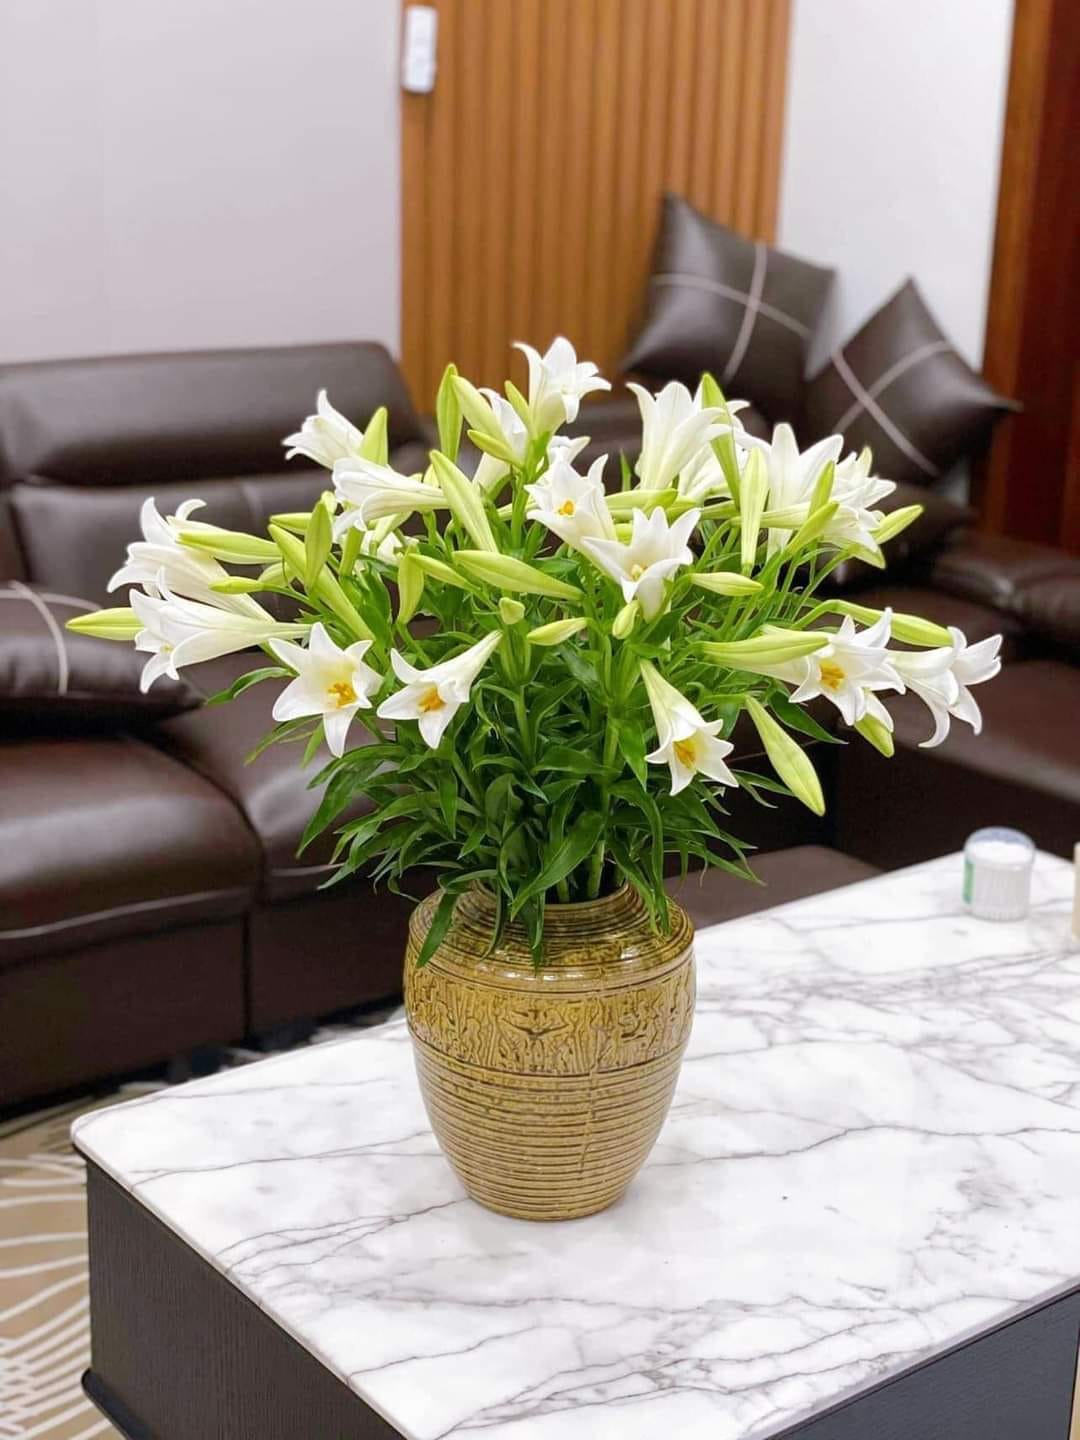 Hoa loa kèn vào mùa, nhiều địa chỉ online rao bán chỉ từ 49k cho bó 50 bông to  - Ảnh 8.